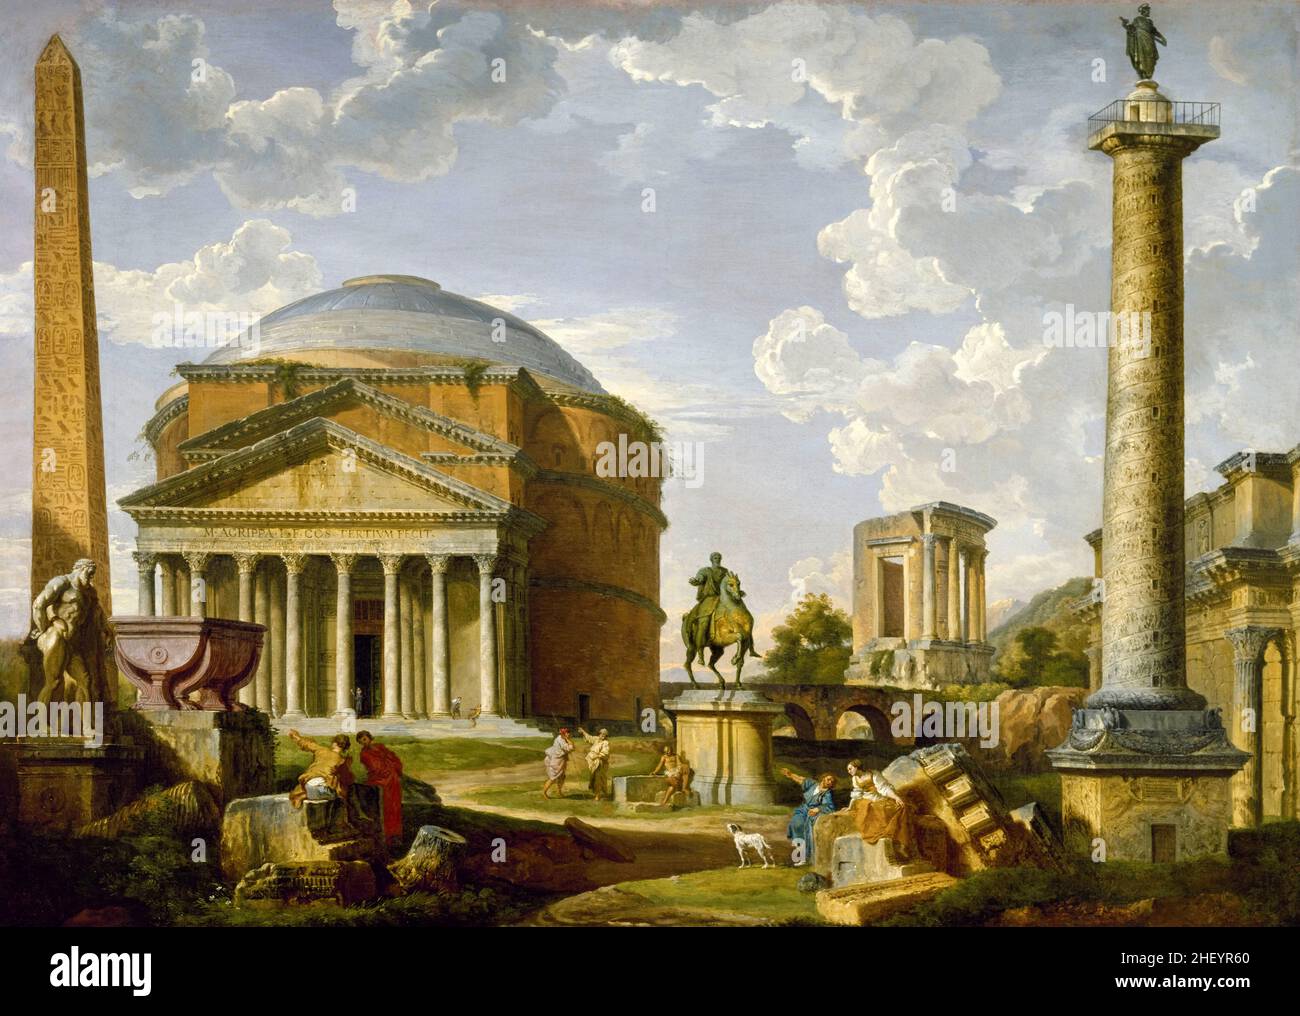 Vista fantasy con il Pantheon e altri monumenti dell'antica Roma, dipinto di Giovanni Paolo panini, 1737 Foto Stock